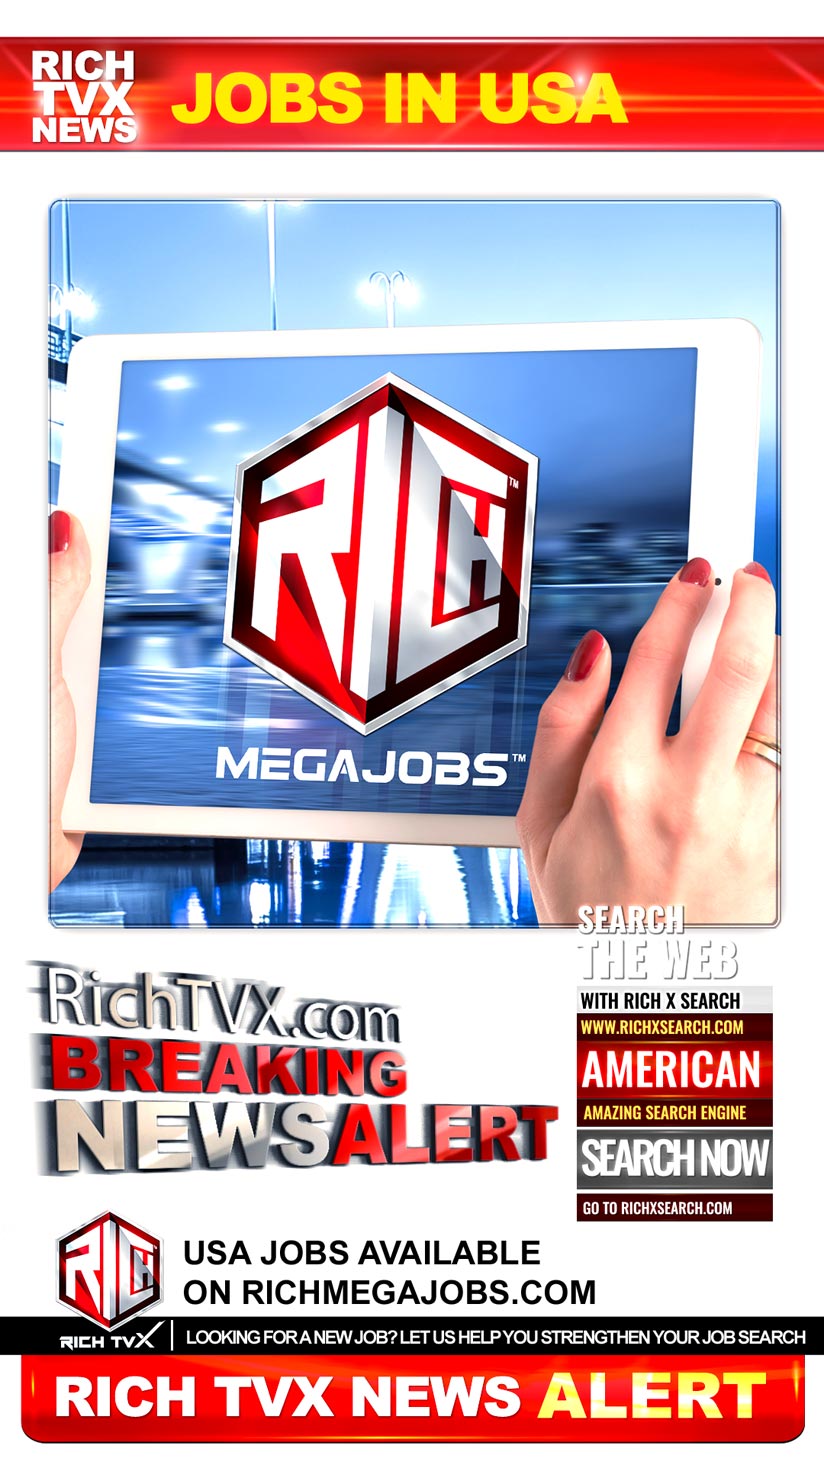 USA Jobs Available On RichMegaJobs.com